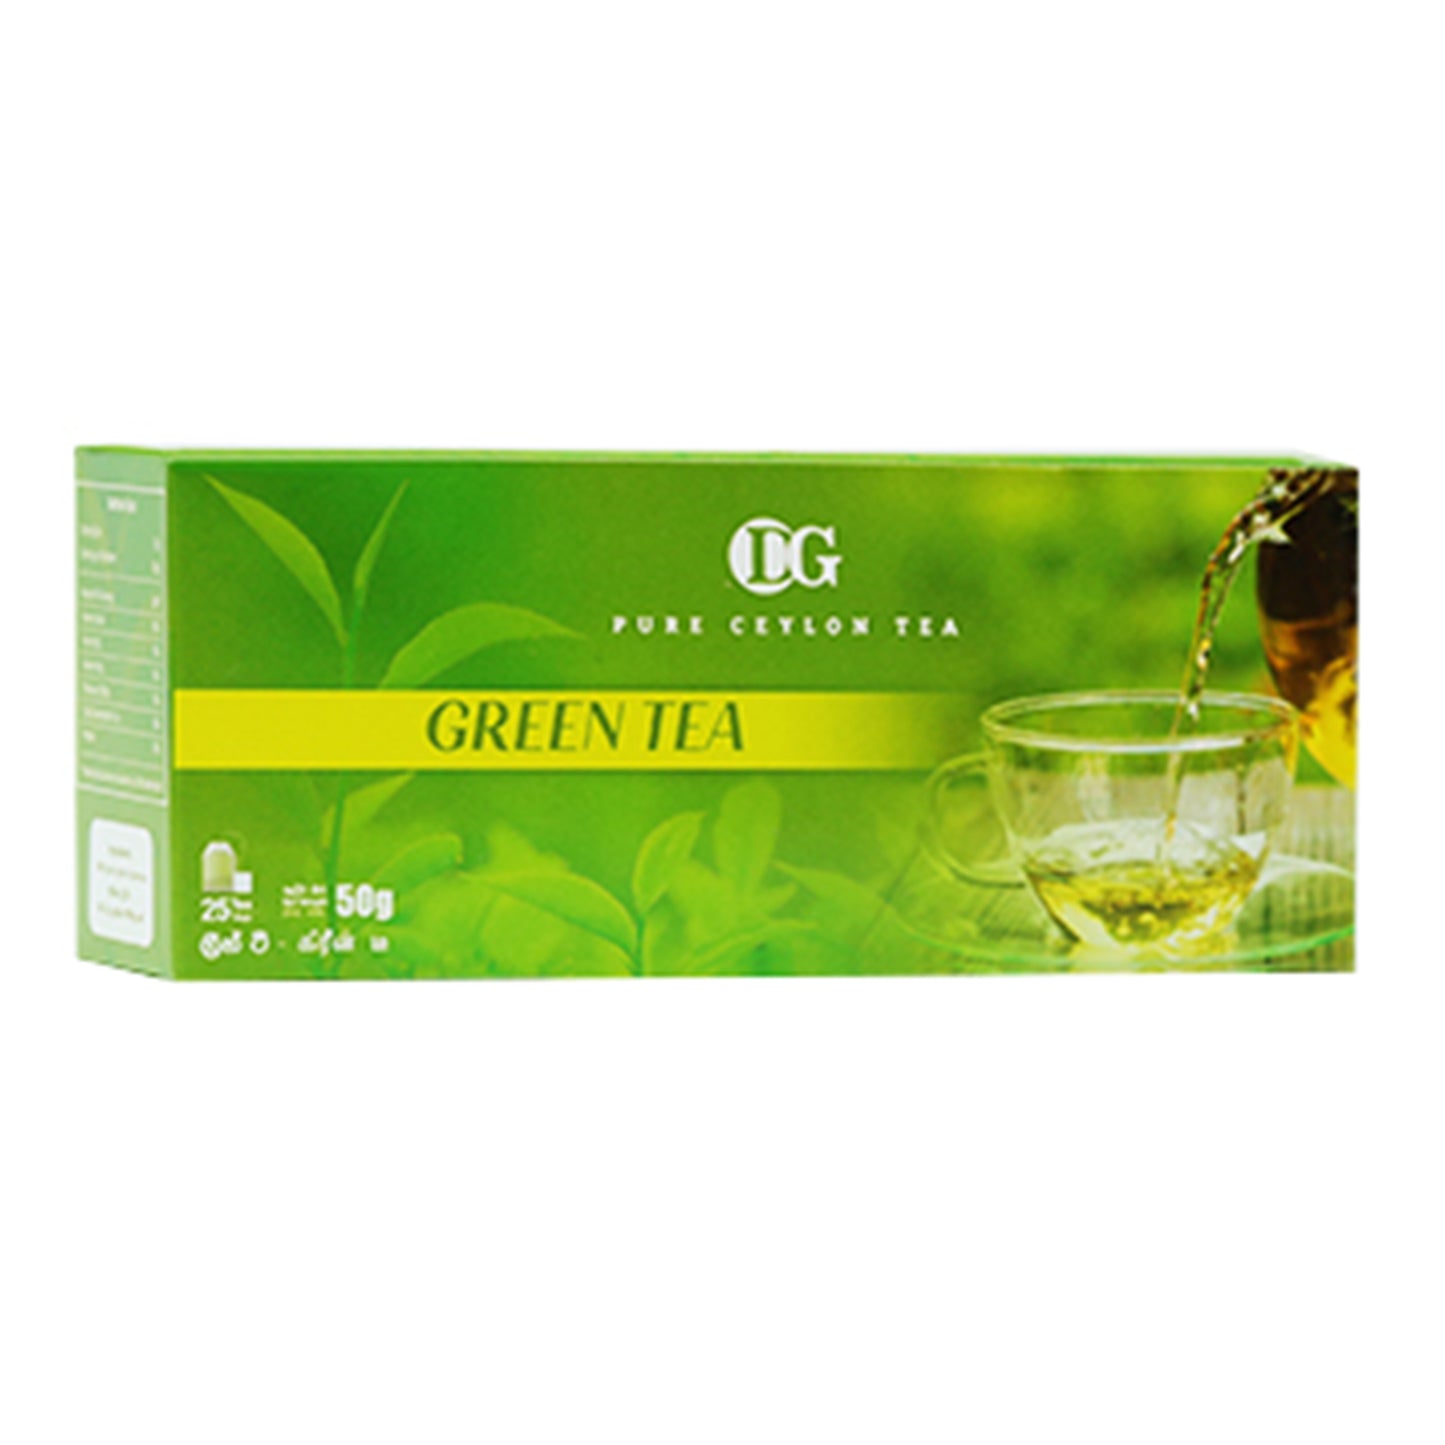 DG Labookellie groene thee (50 g) 25 theezakjes